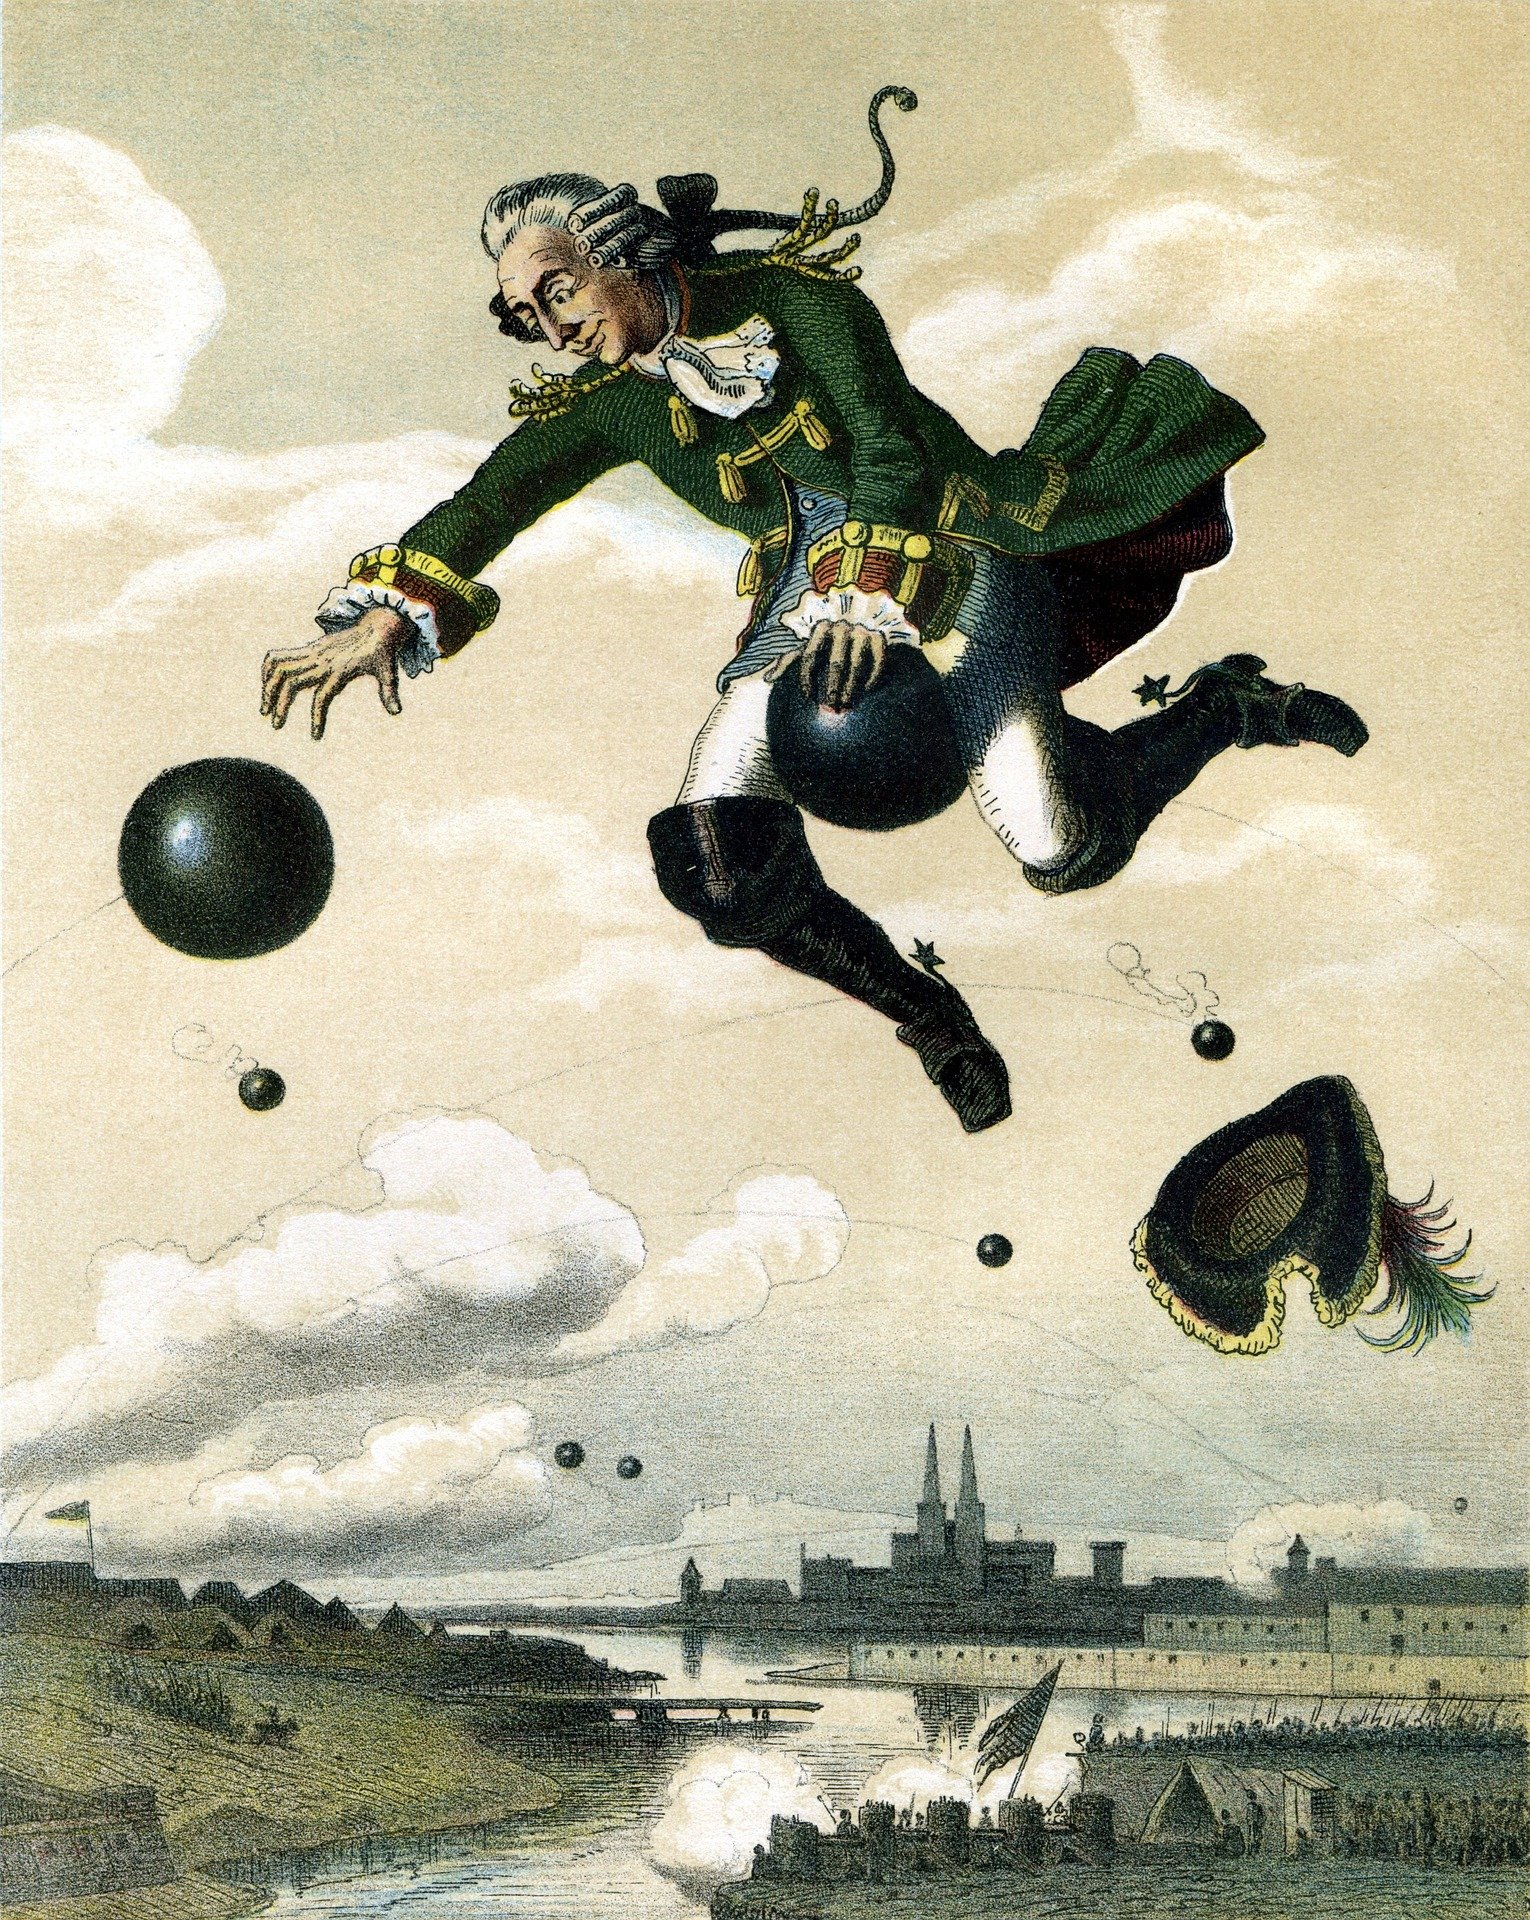 Der Barion Münchhausen reitet auf der Kanonenkugel. Die Geschichte glorifiziert den Lügner.